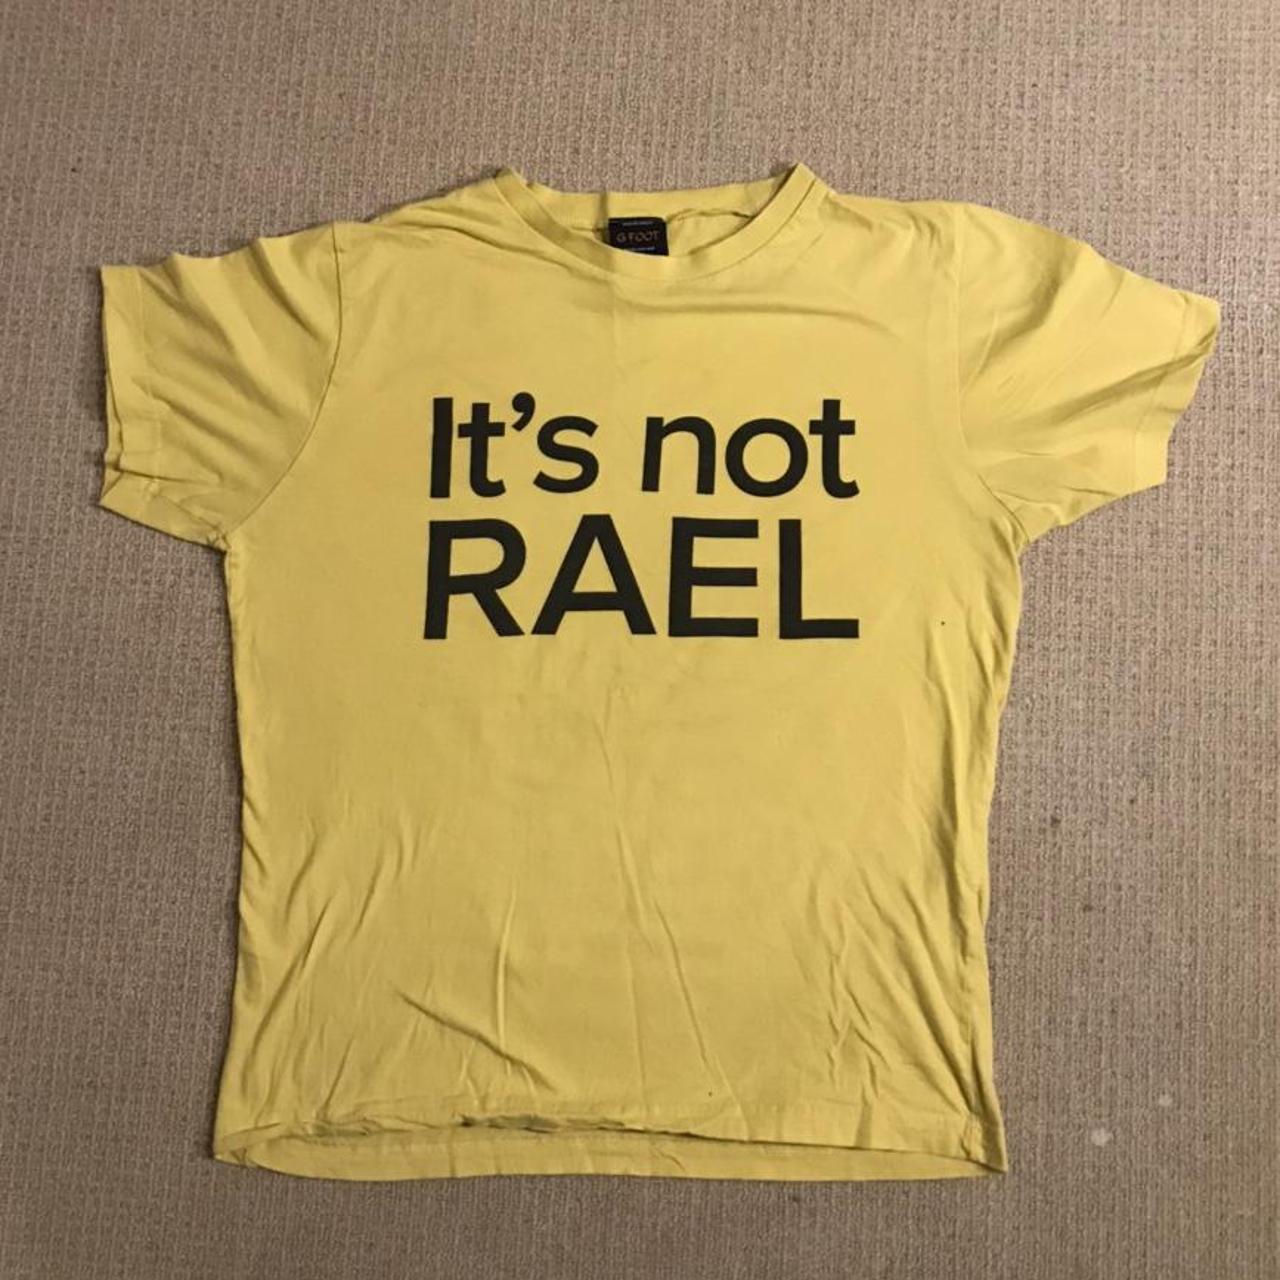 Official Gorillaz “it’s not RAEL” shirt, from Gfoot.... - Depop